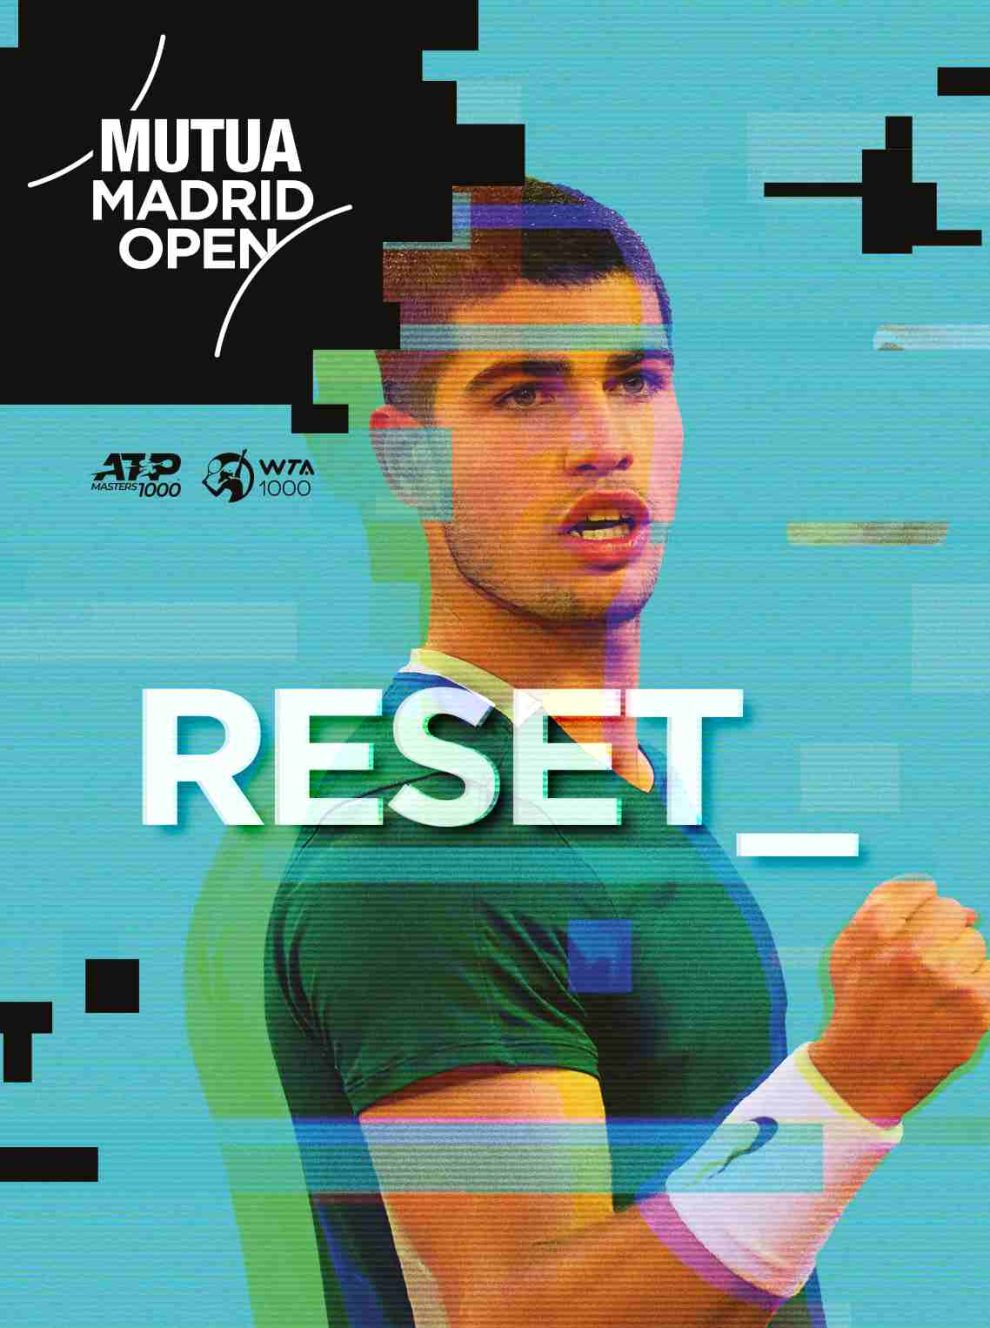 Mutua Madrid Open cambia imagen